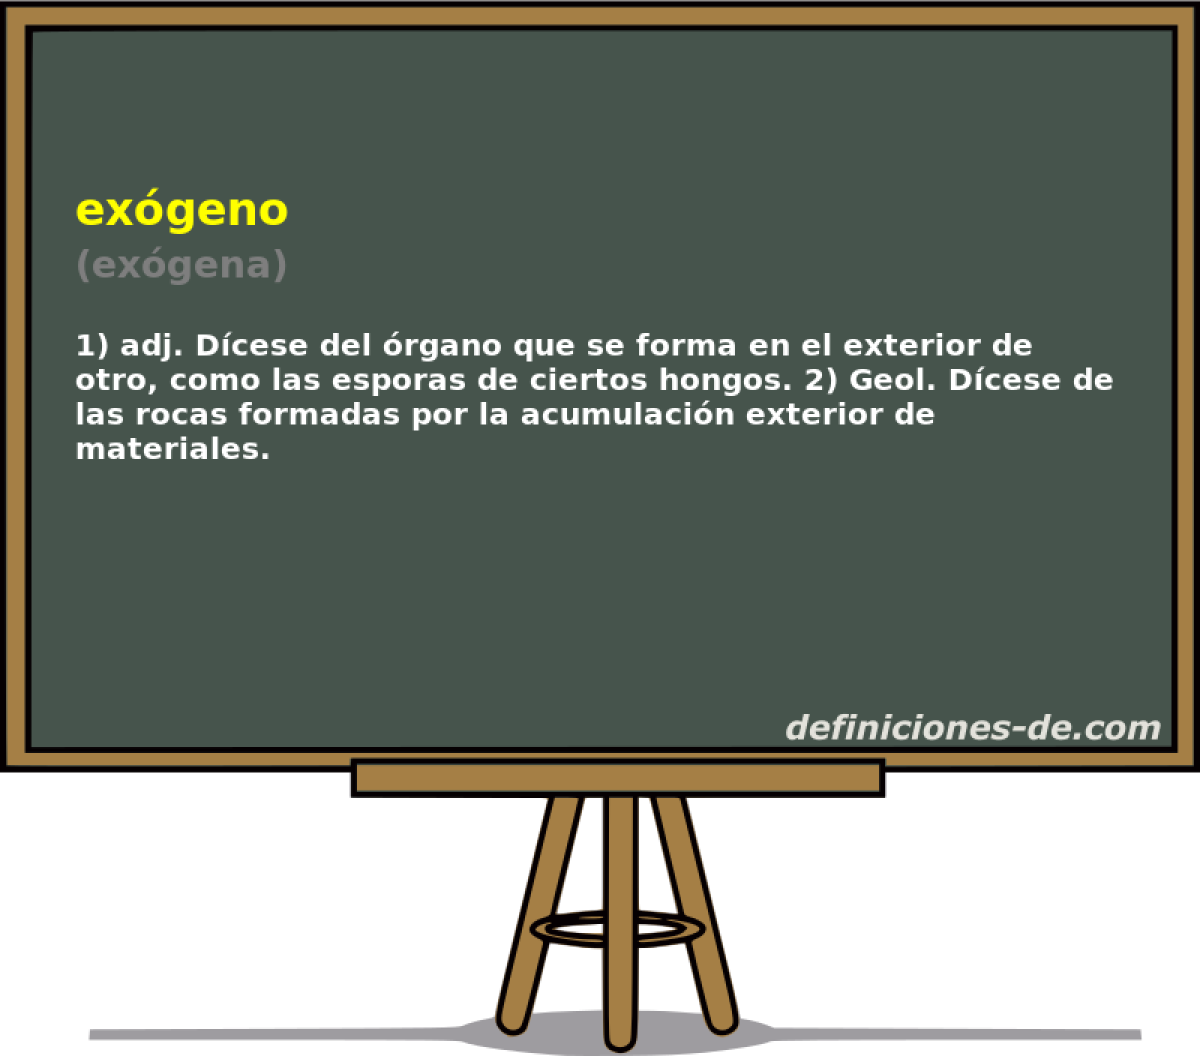 exgeno (exgena)